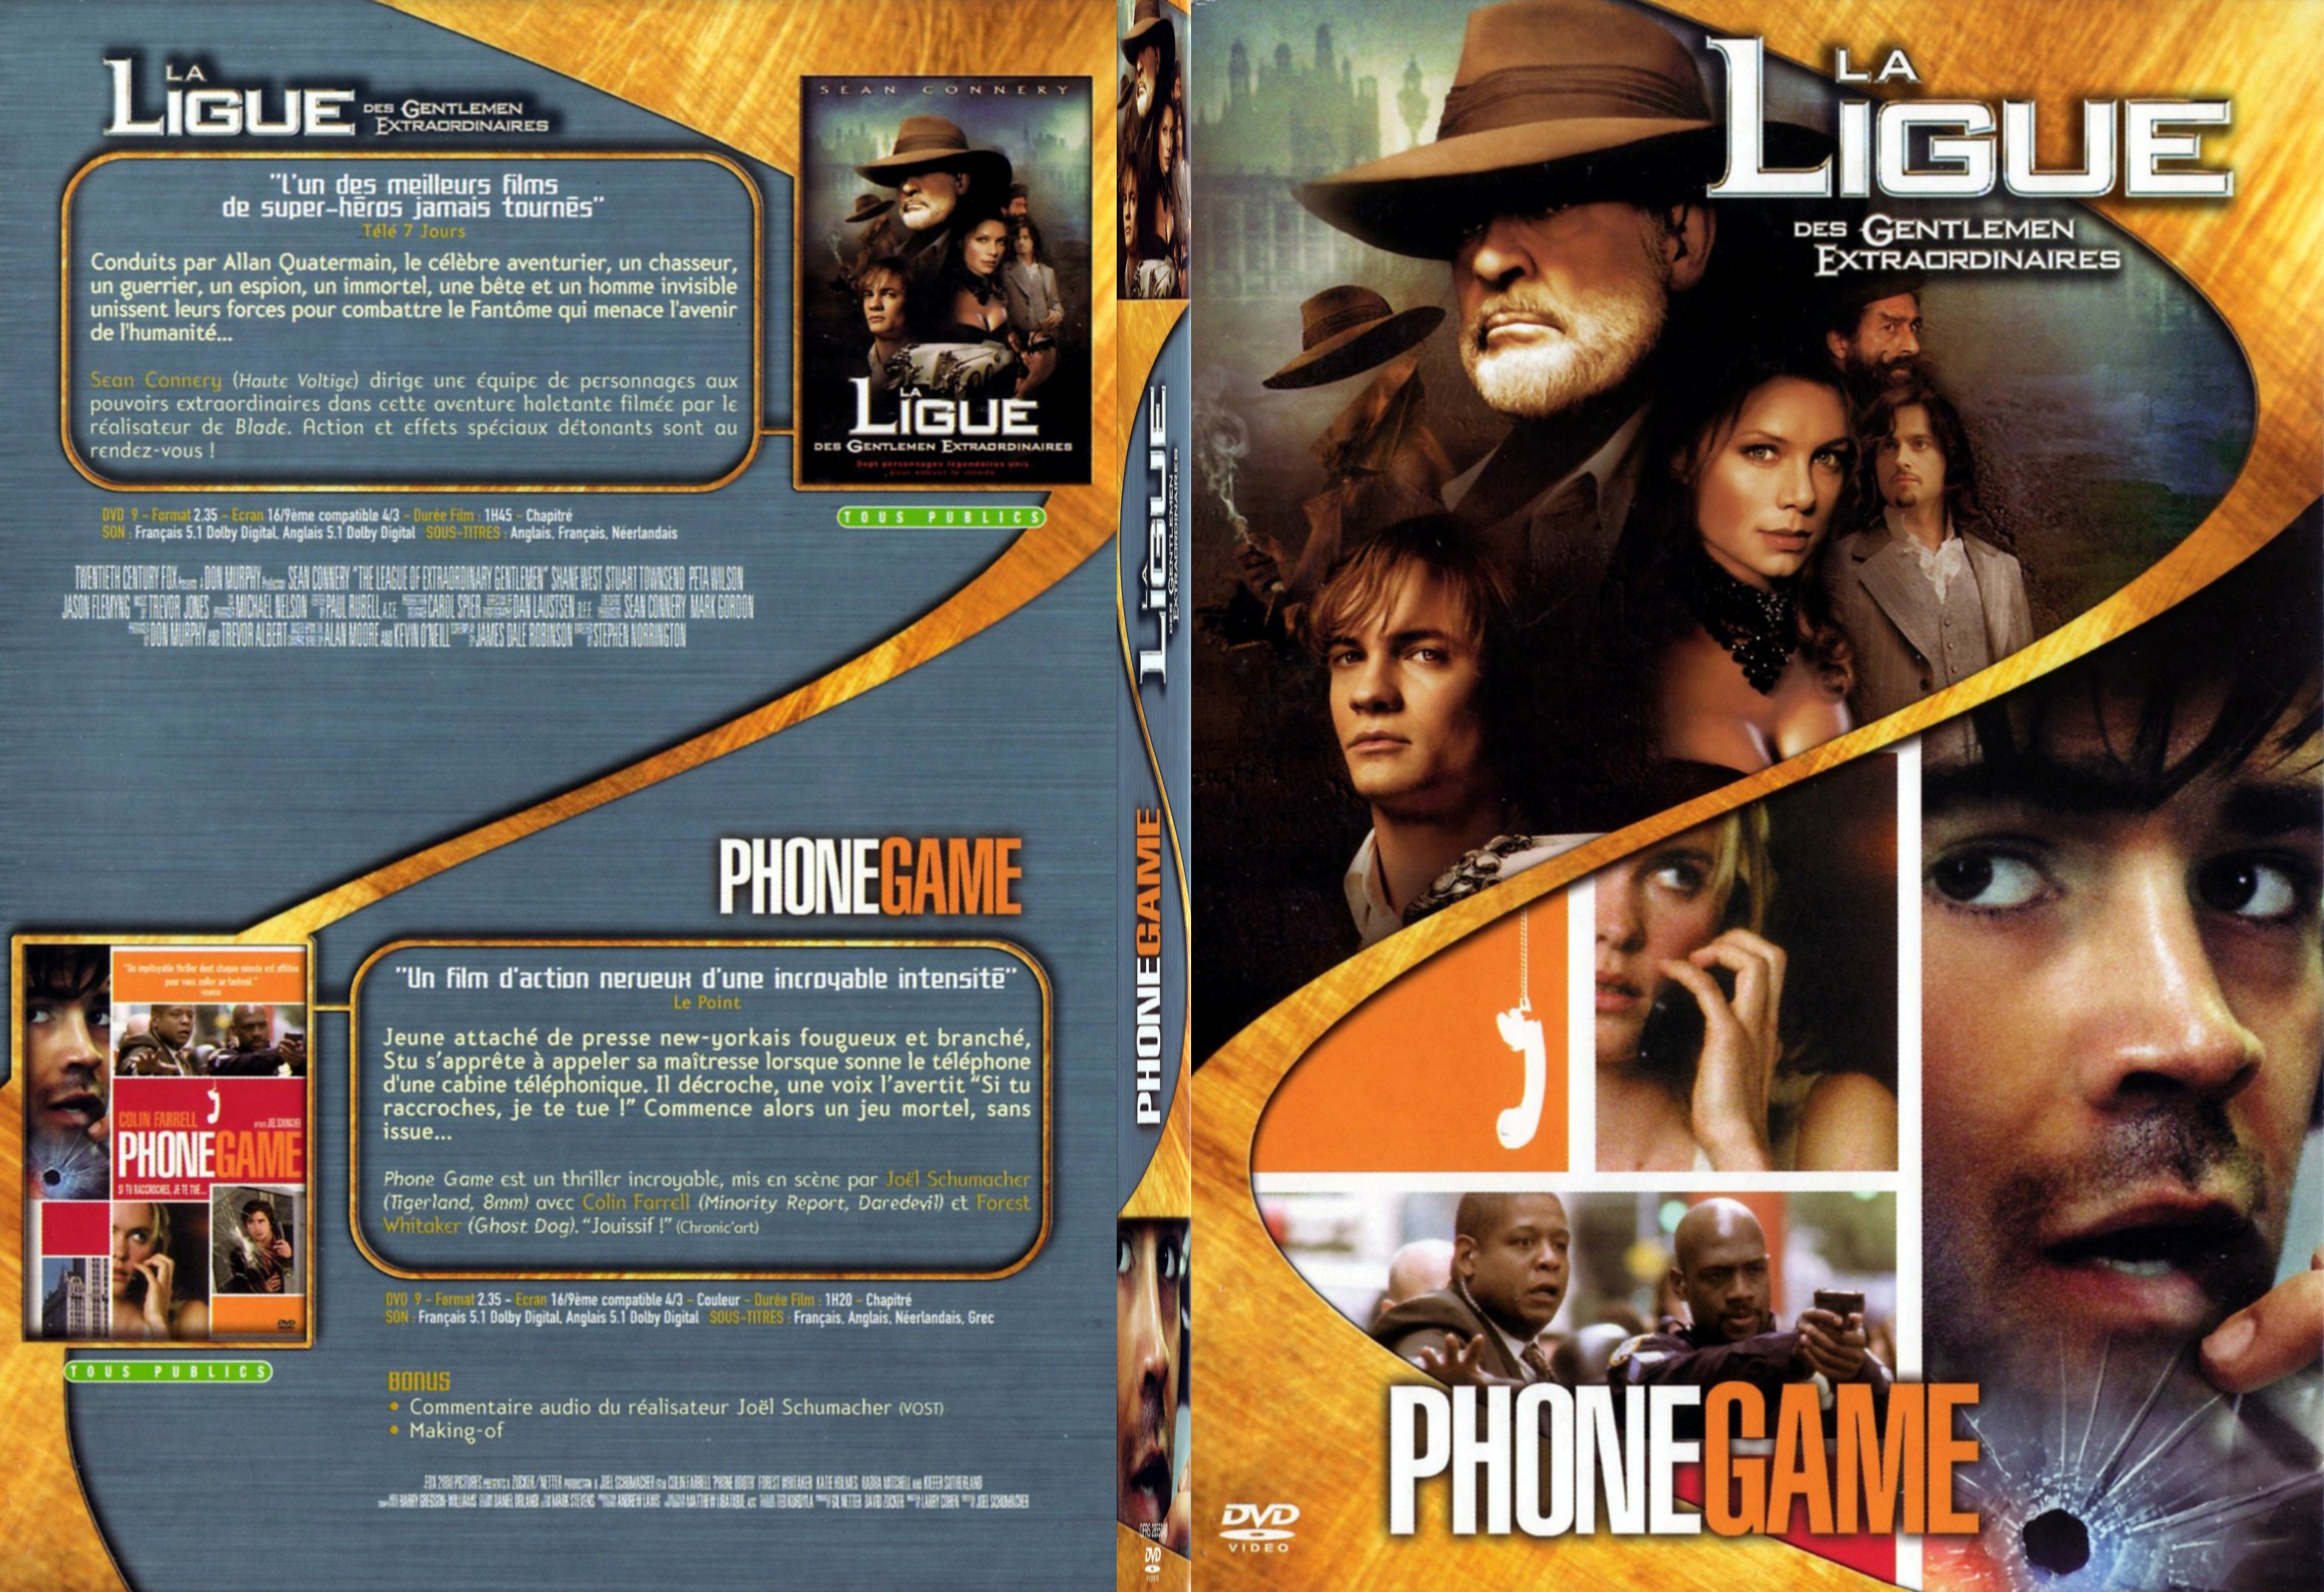 Jaquette DVD La ligue des gentlemen extraordinaires + Phone game - SLIM